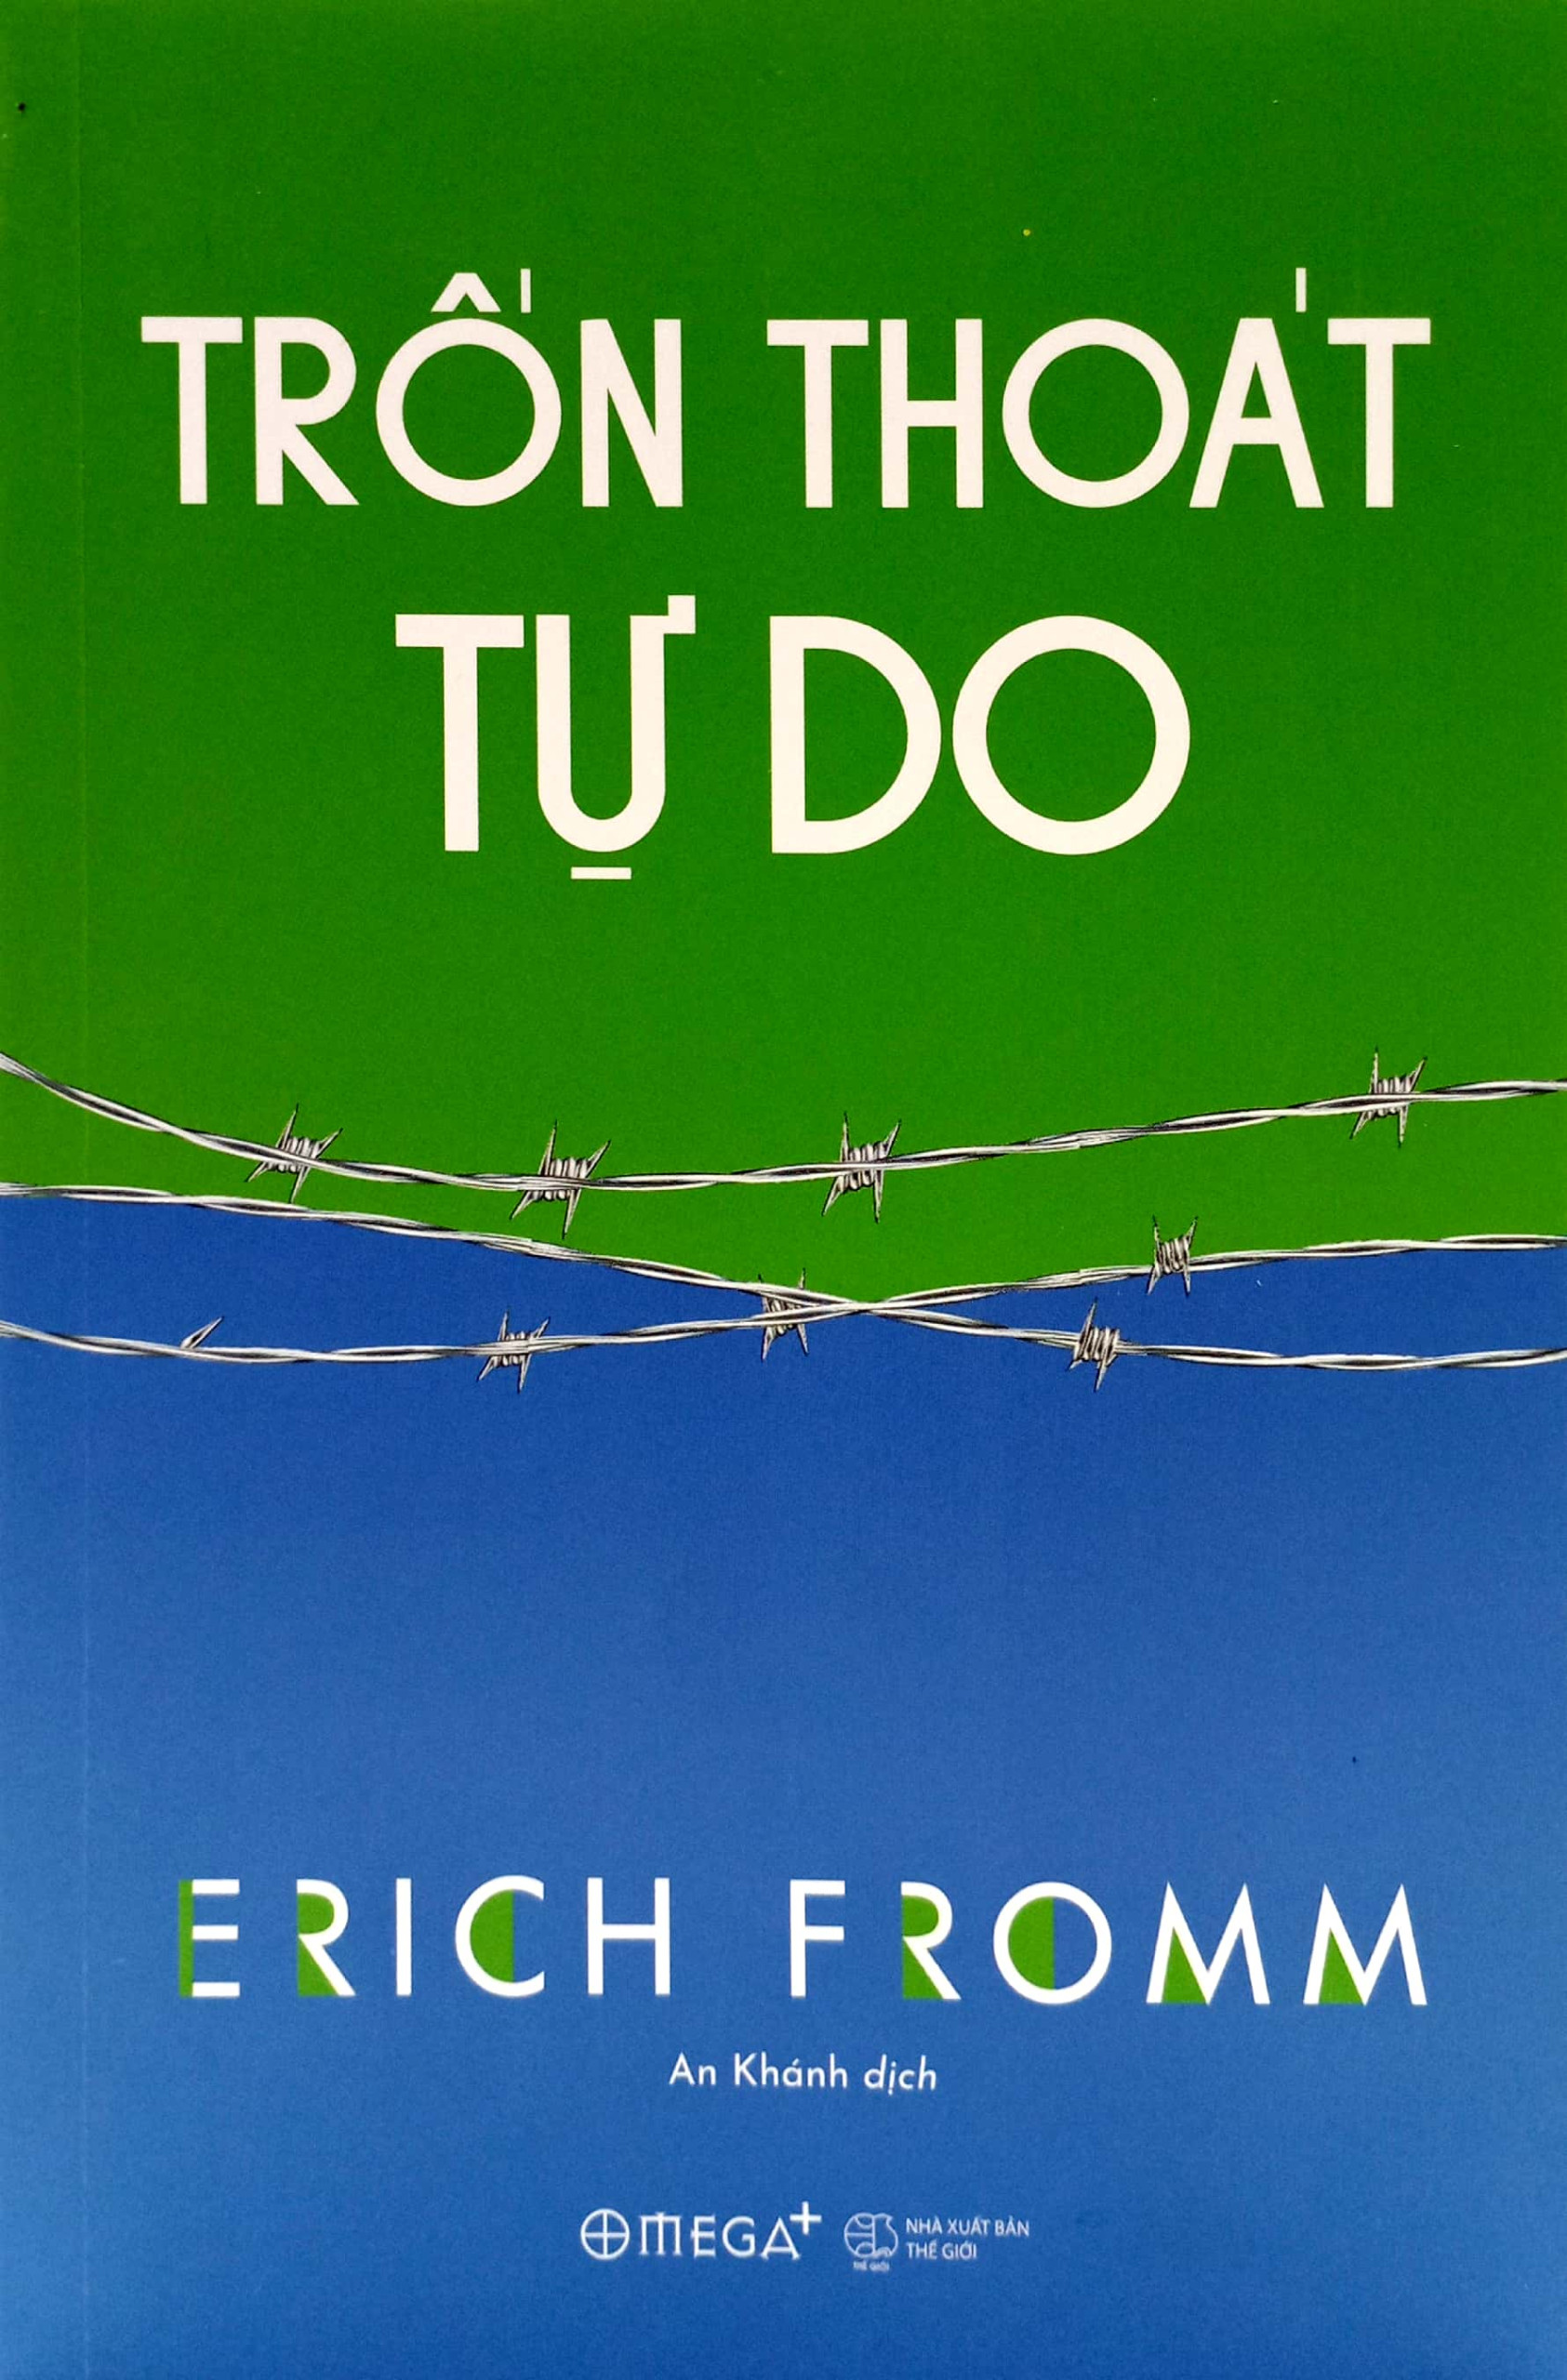 (Bộ 3 Cuốn) Erich Fromm (Tâm Phân Học Và Tôn Giáo - Xã Hội Tỉnh Táo - Trốn Thoát Tự Do) - bìa mềm